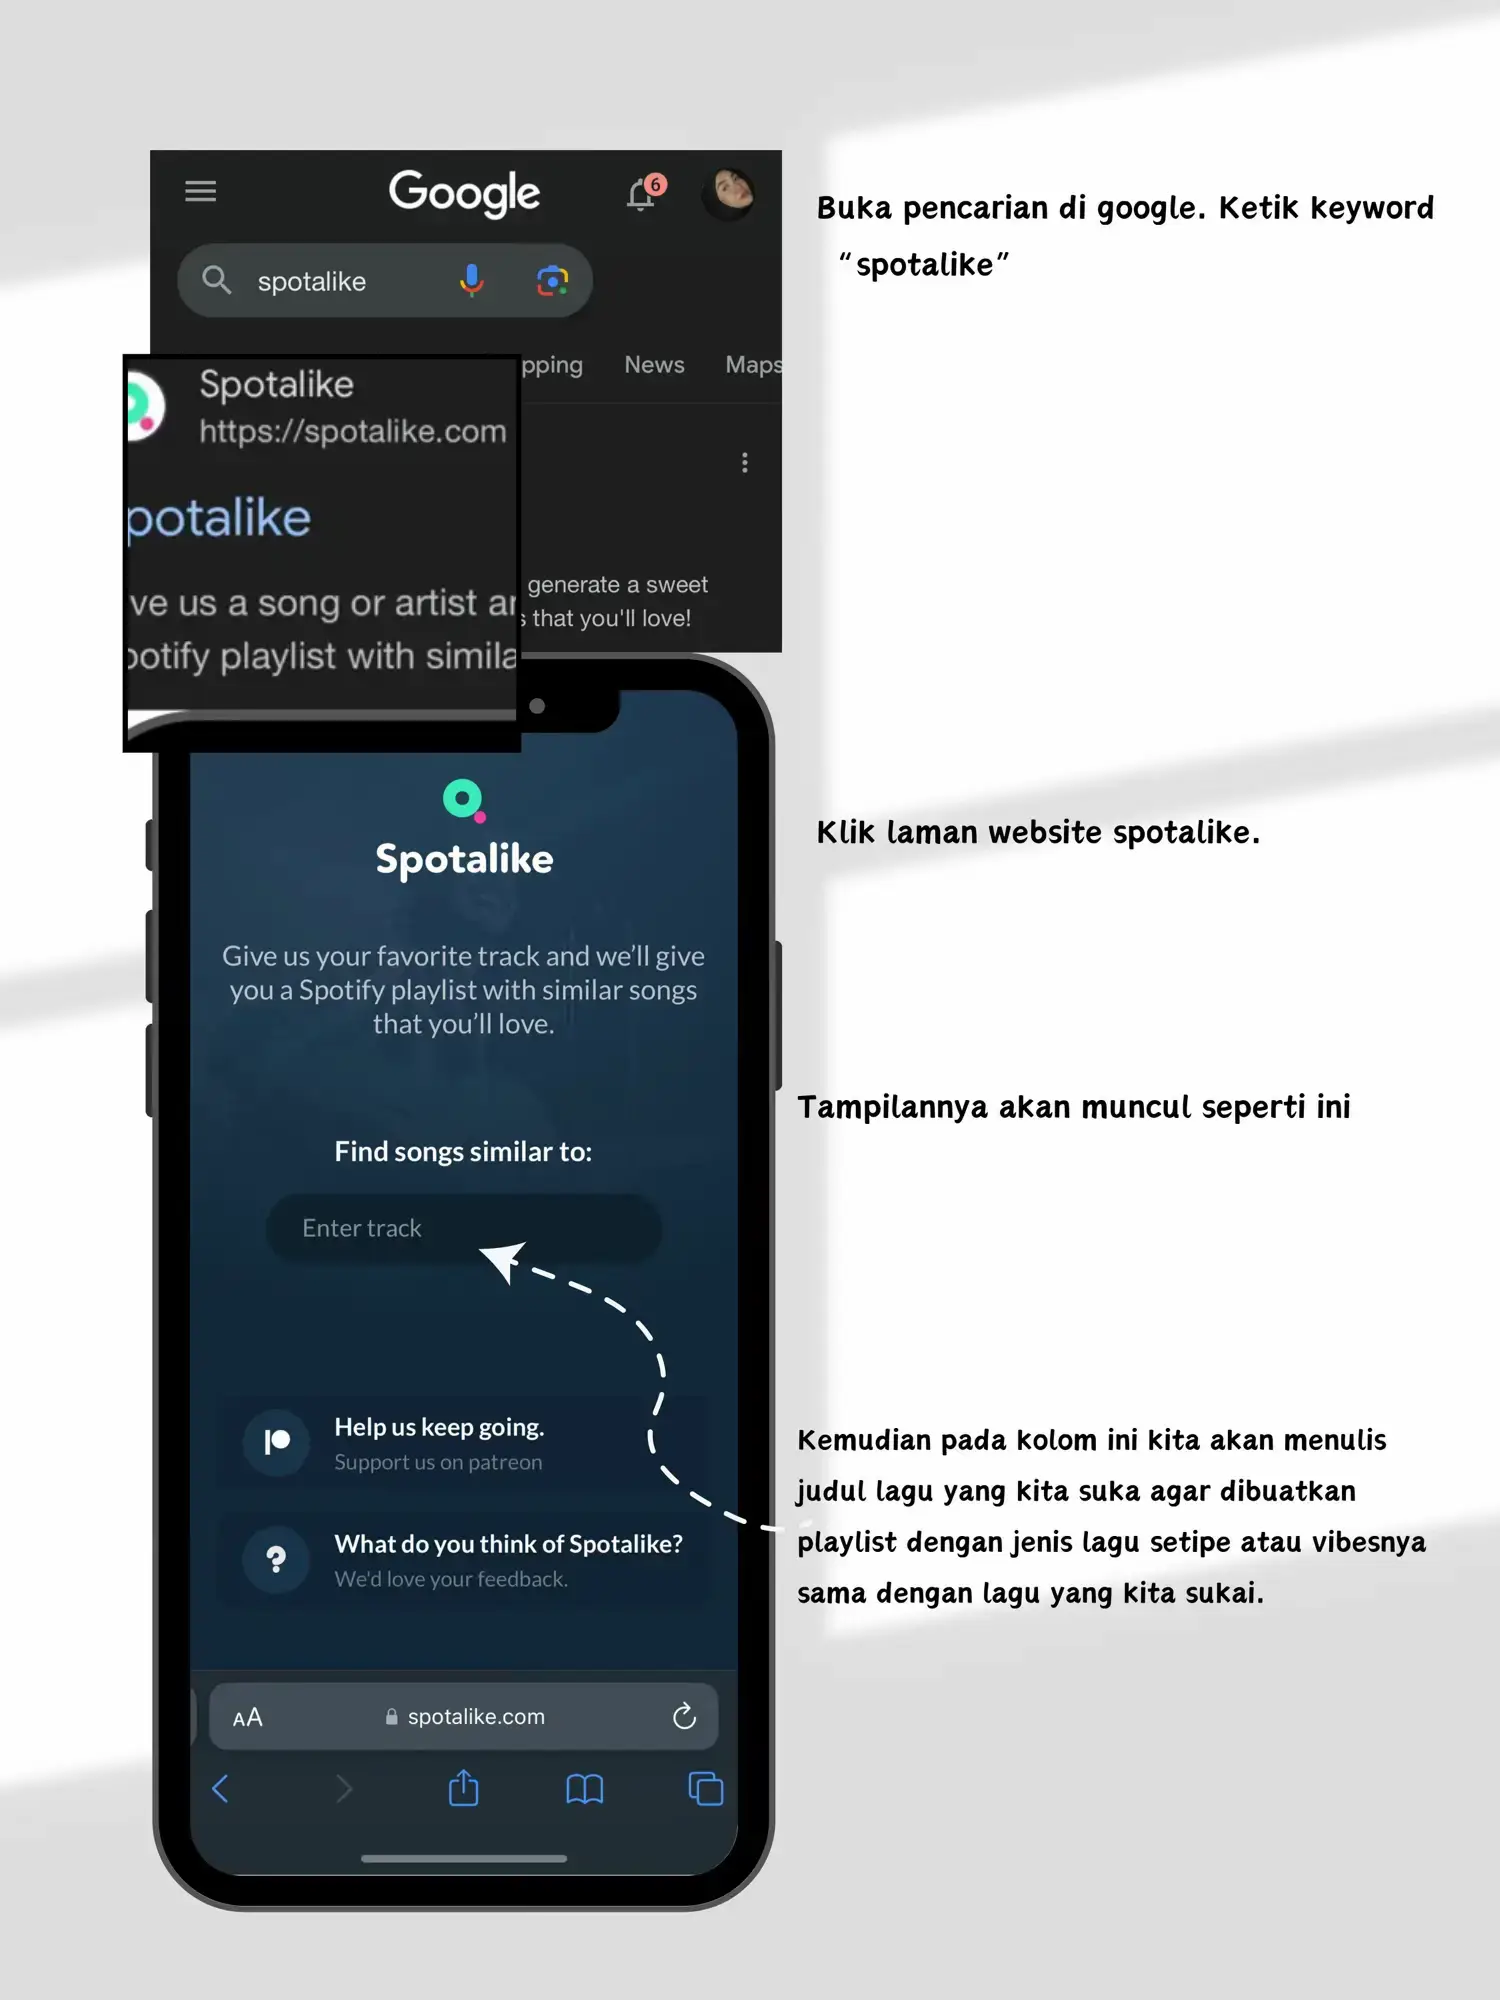 snake io hacks on a phone ｜Pencarian TikTok